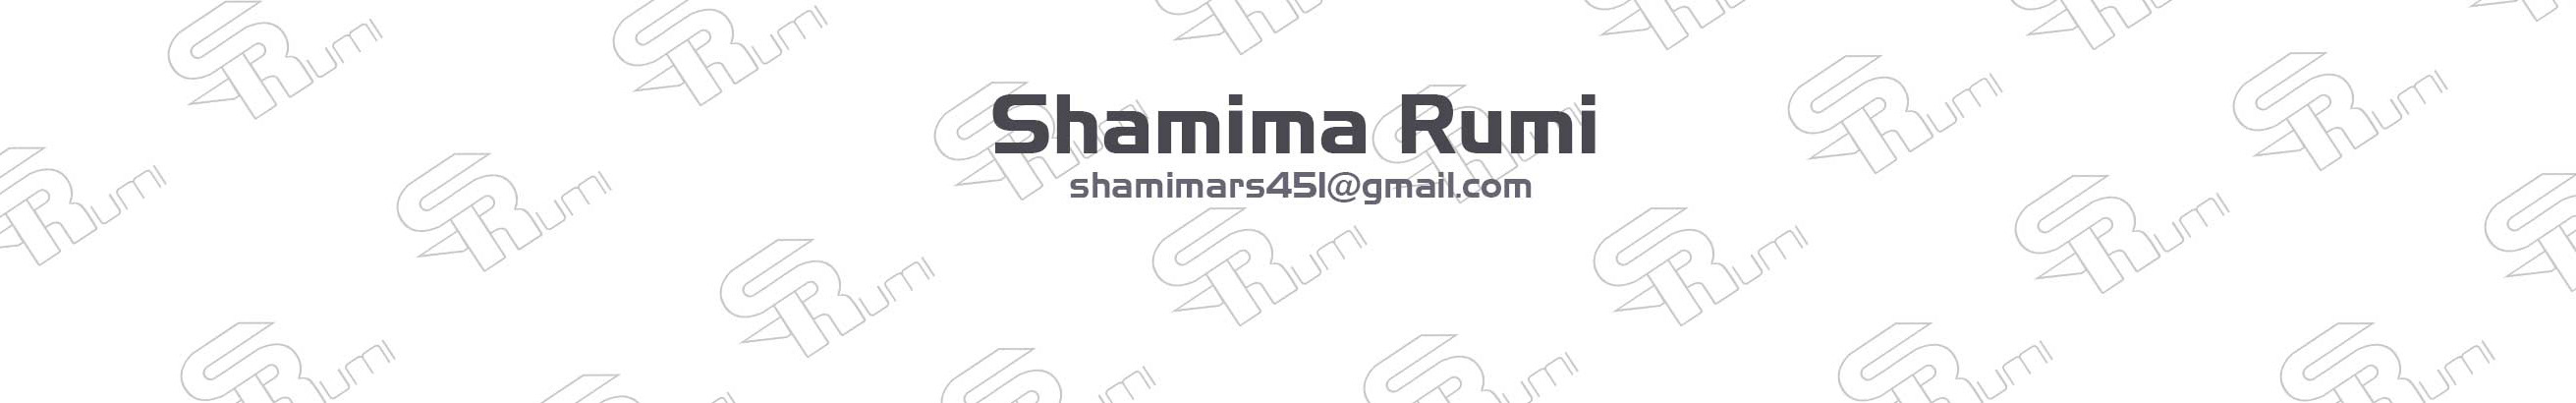 Shamima Rumi profil başlığı